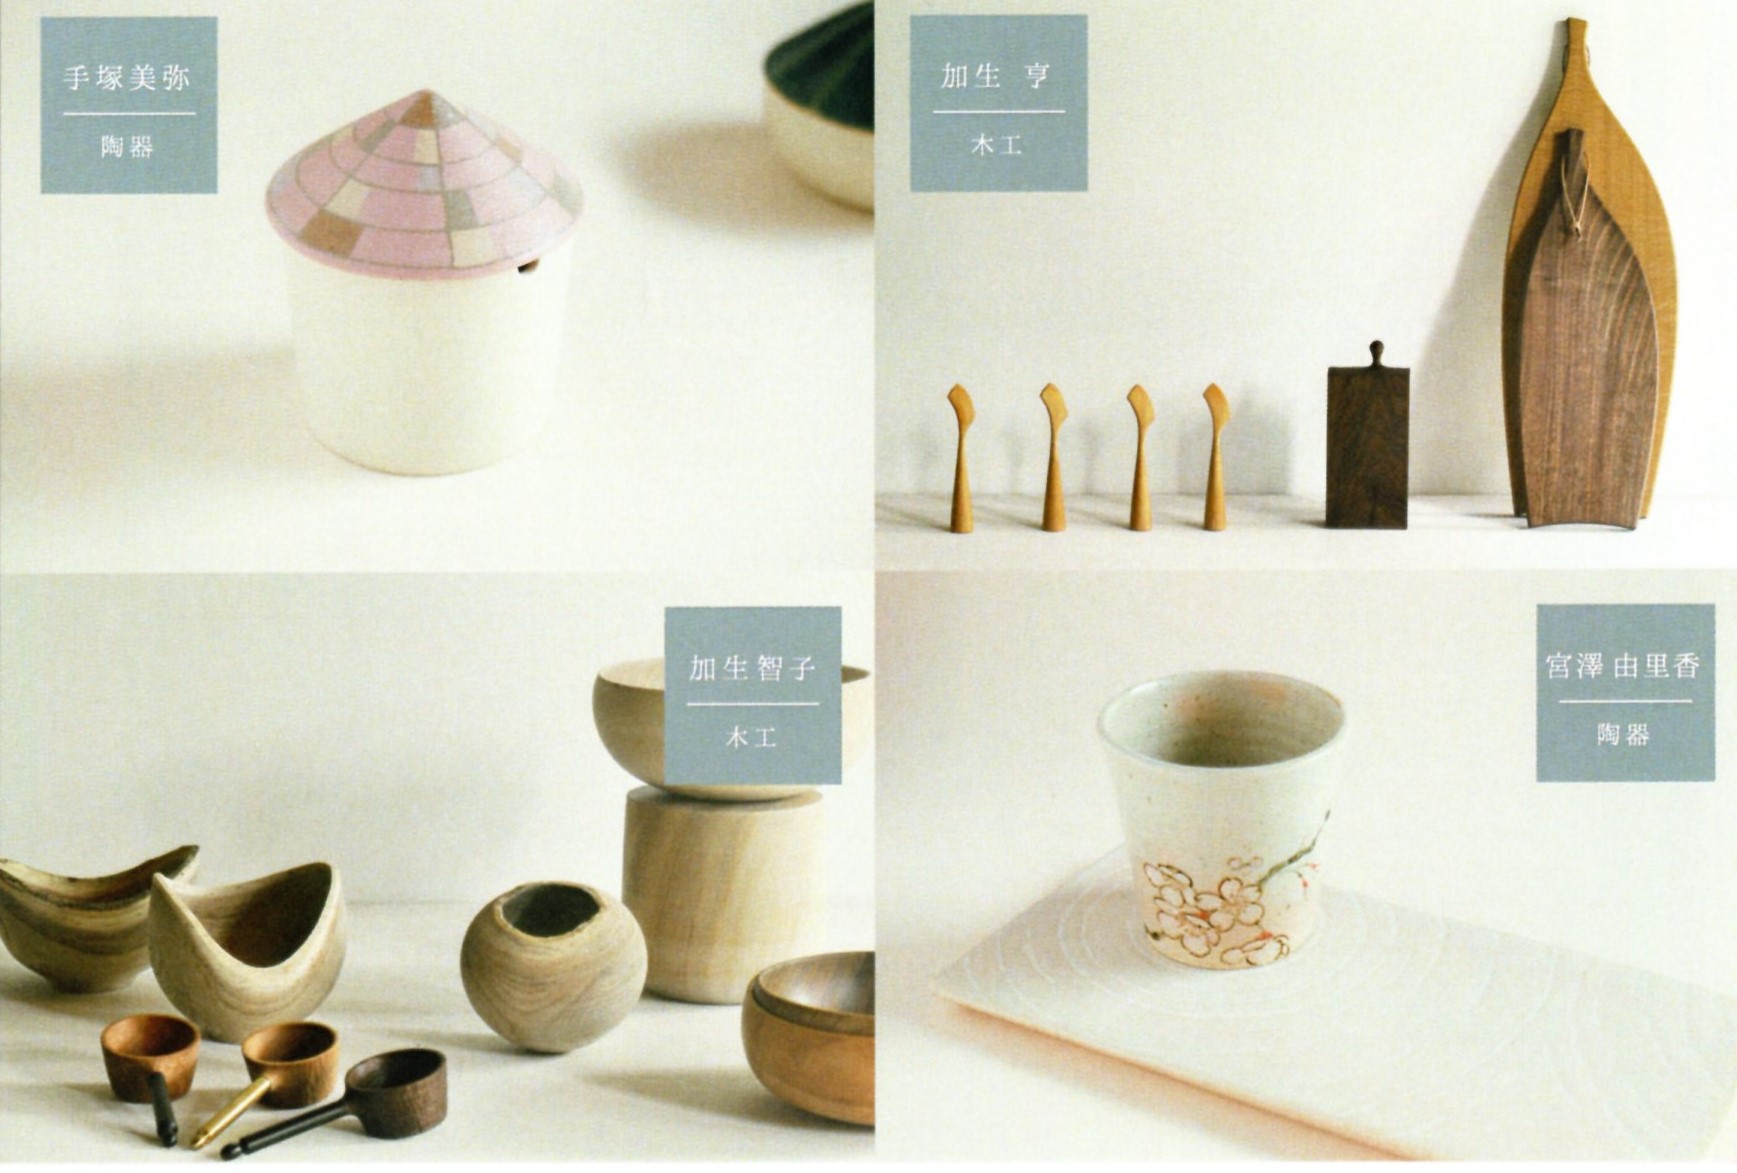 4人展「暮らしの中の陶と木と」at 丸善日本橋店